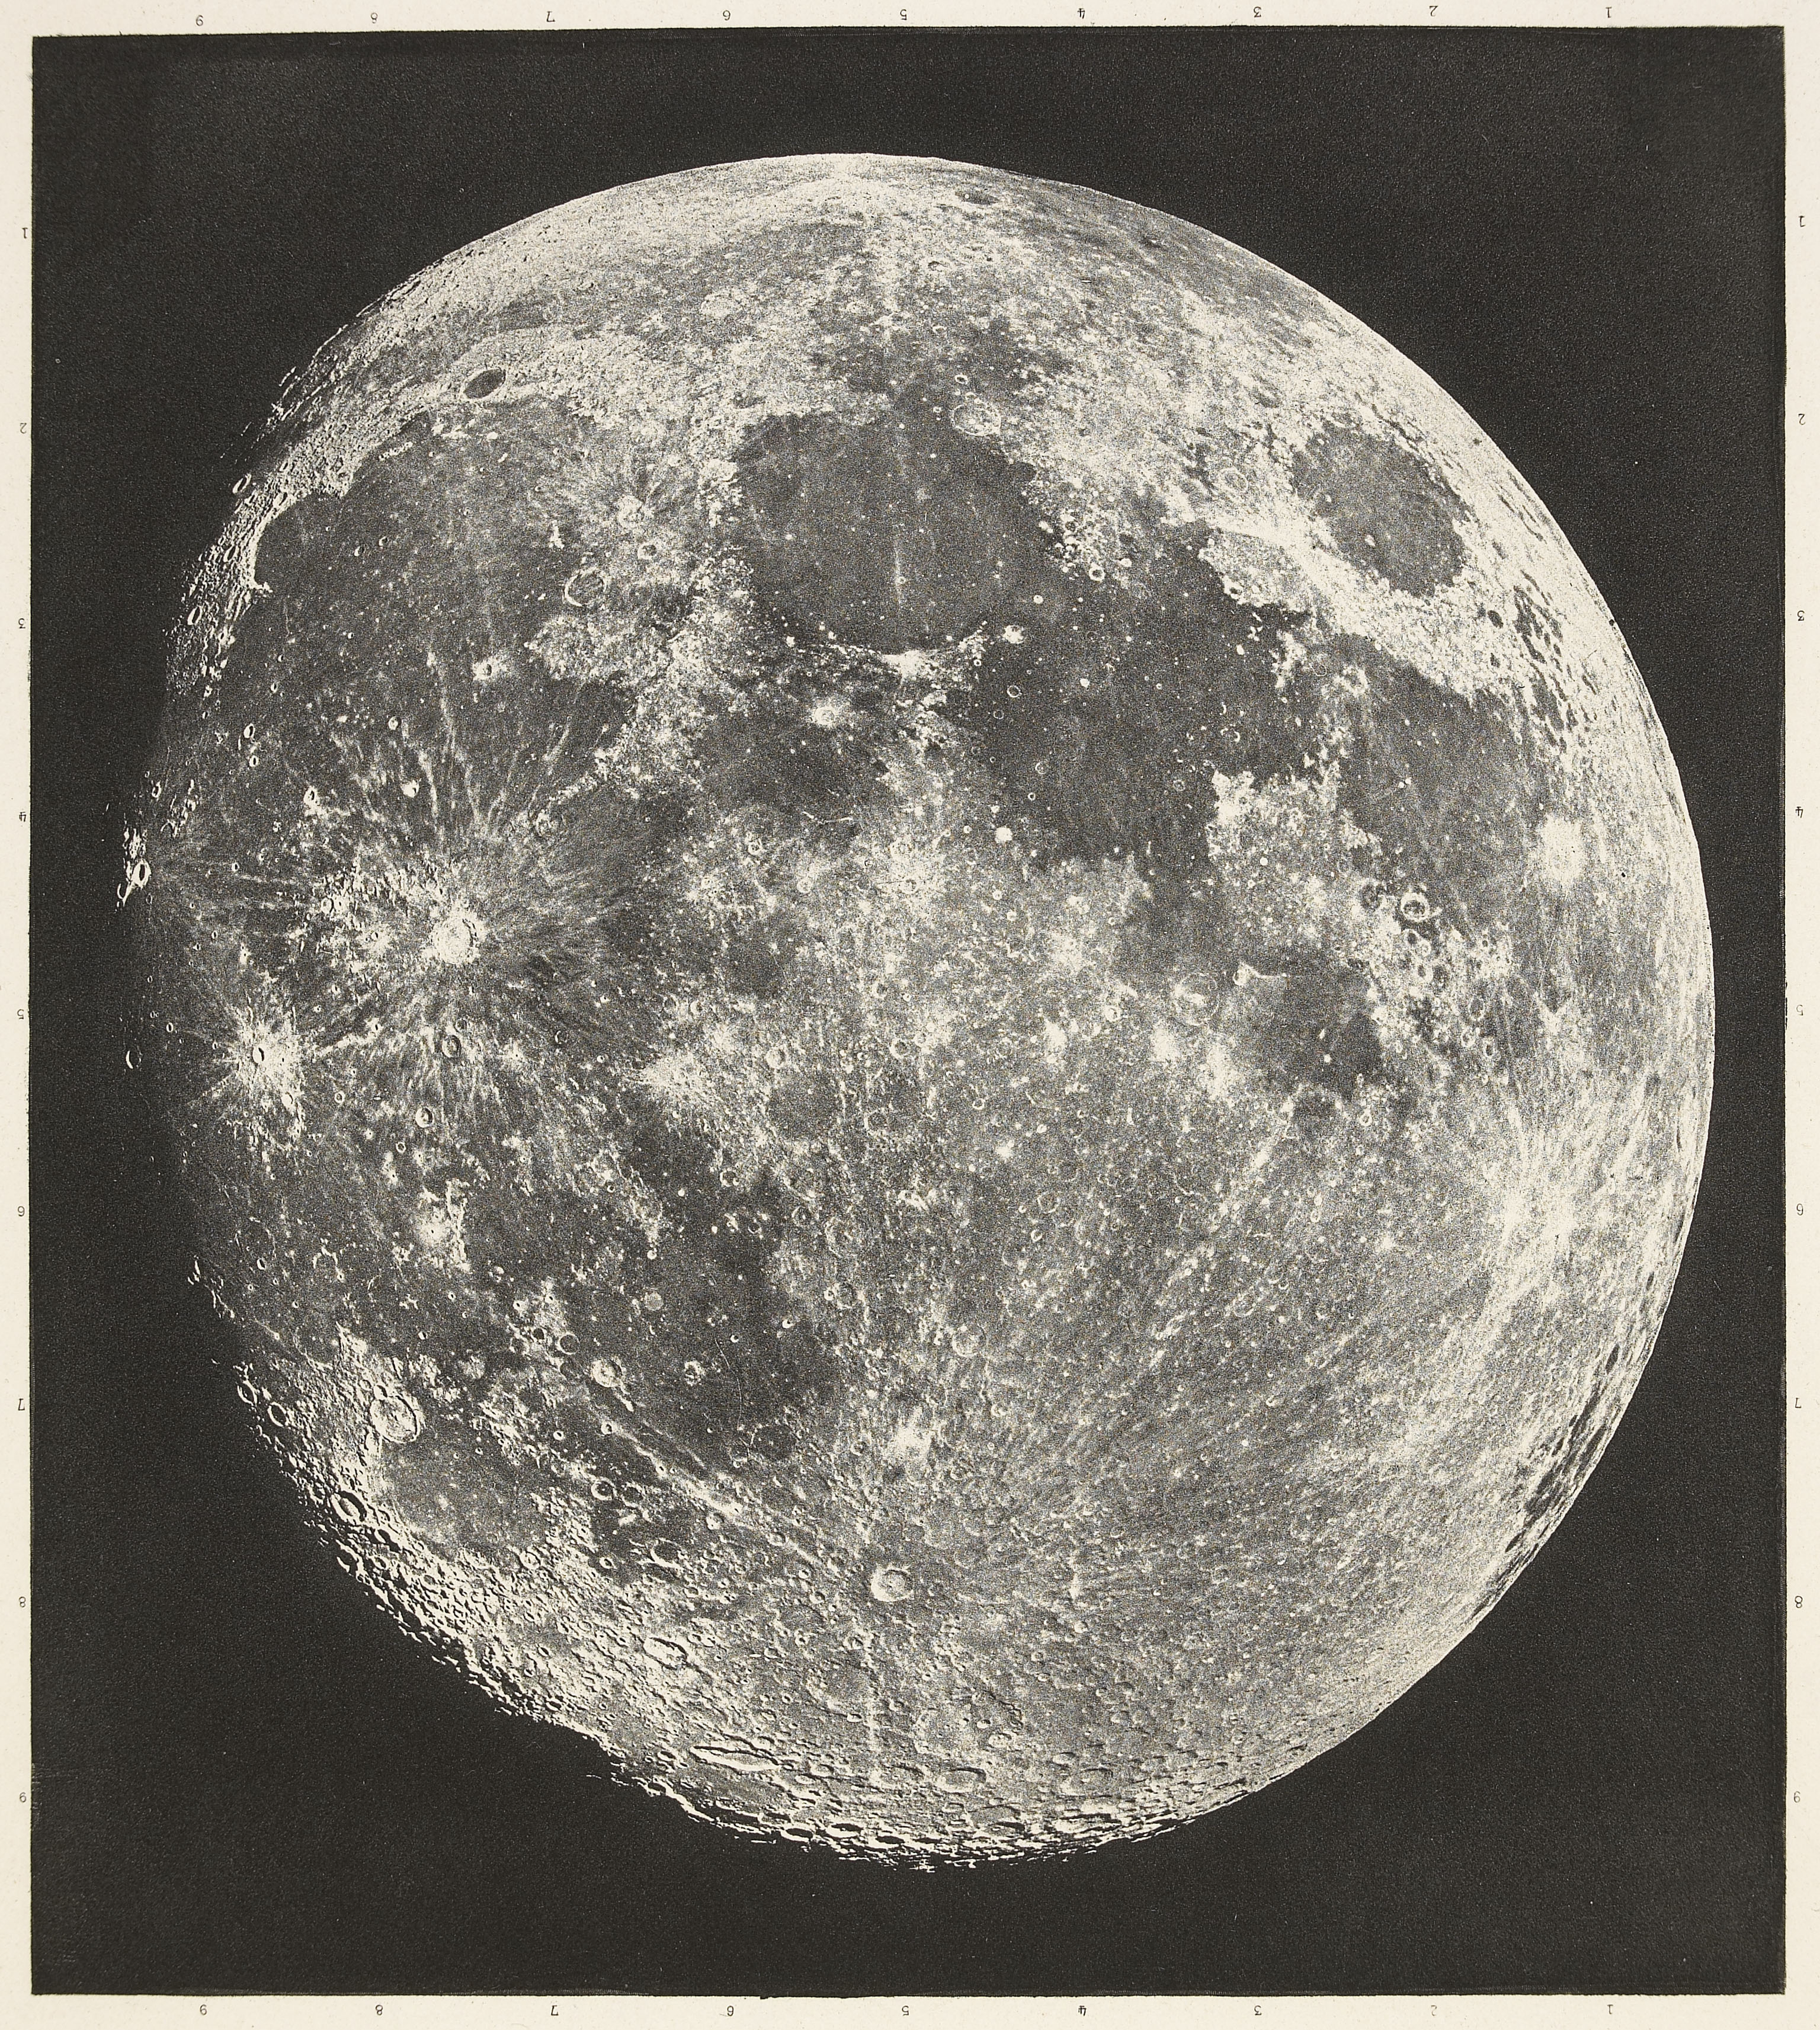 Loewy & Puiseux, La lune